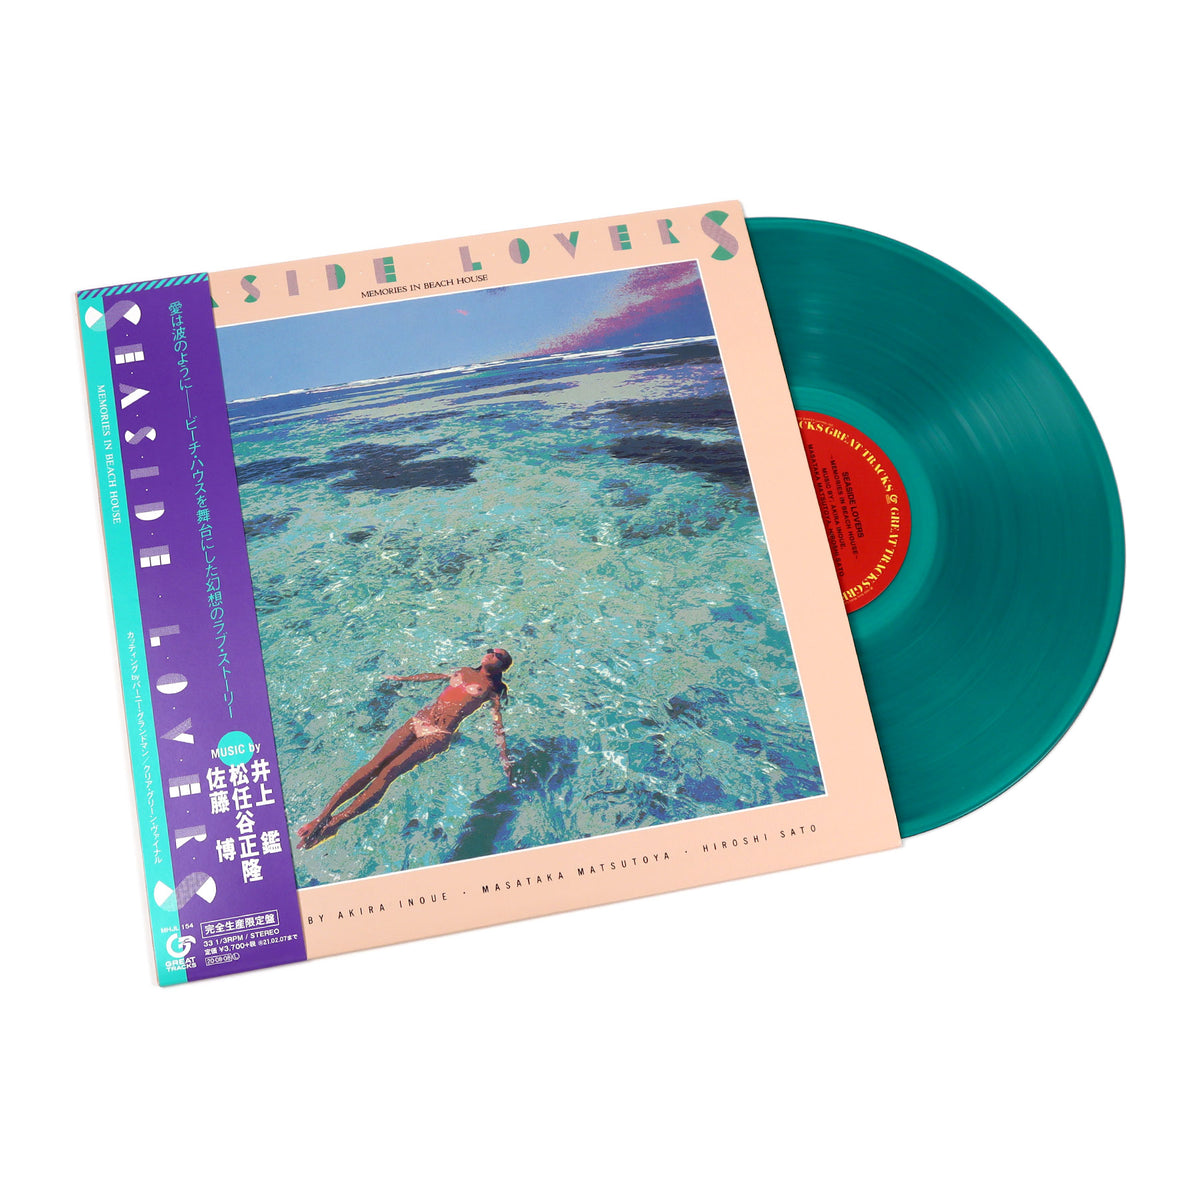 Seaside Lovers: Memories In Beach House (Green Colored Vinyl